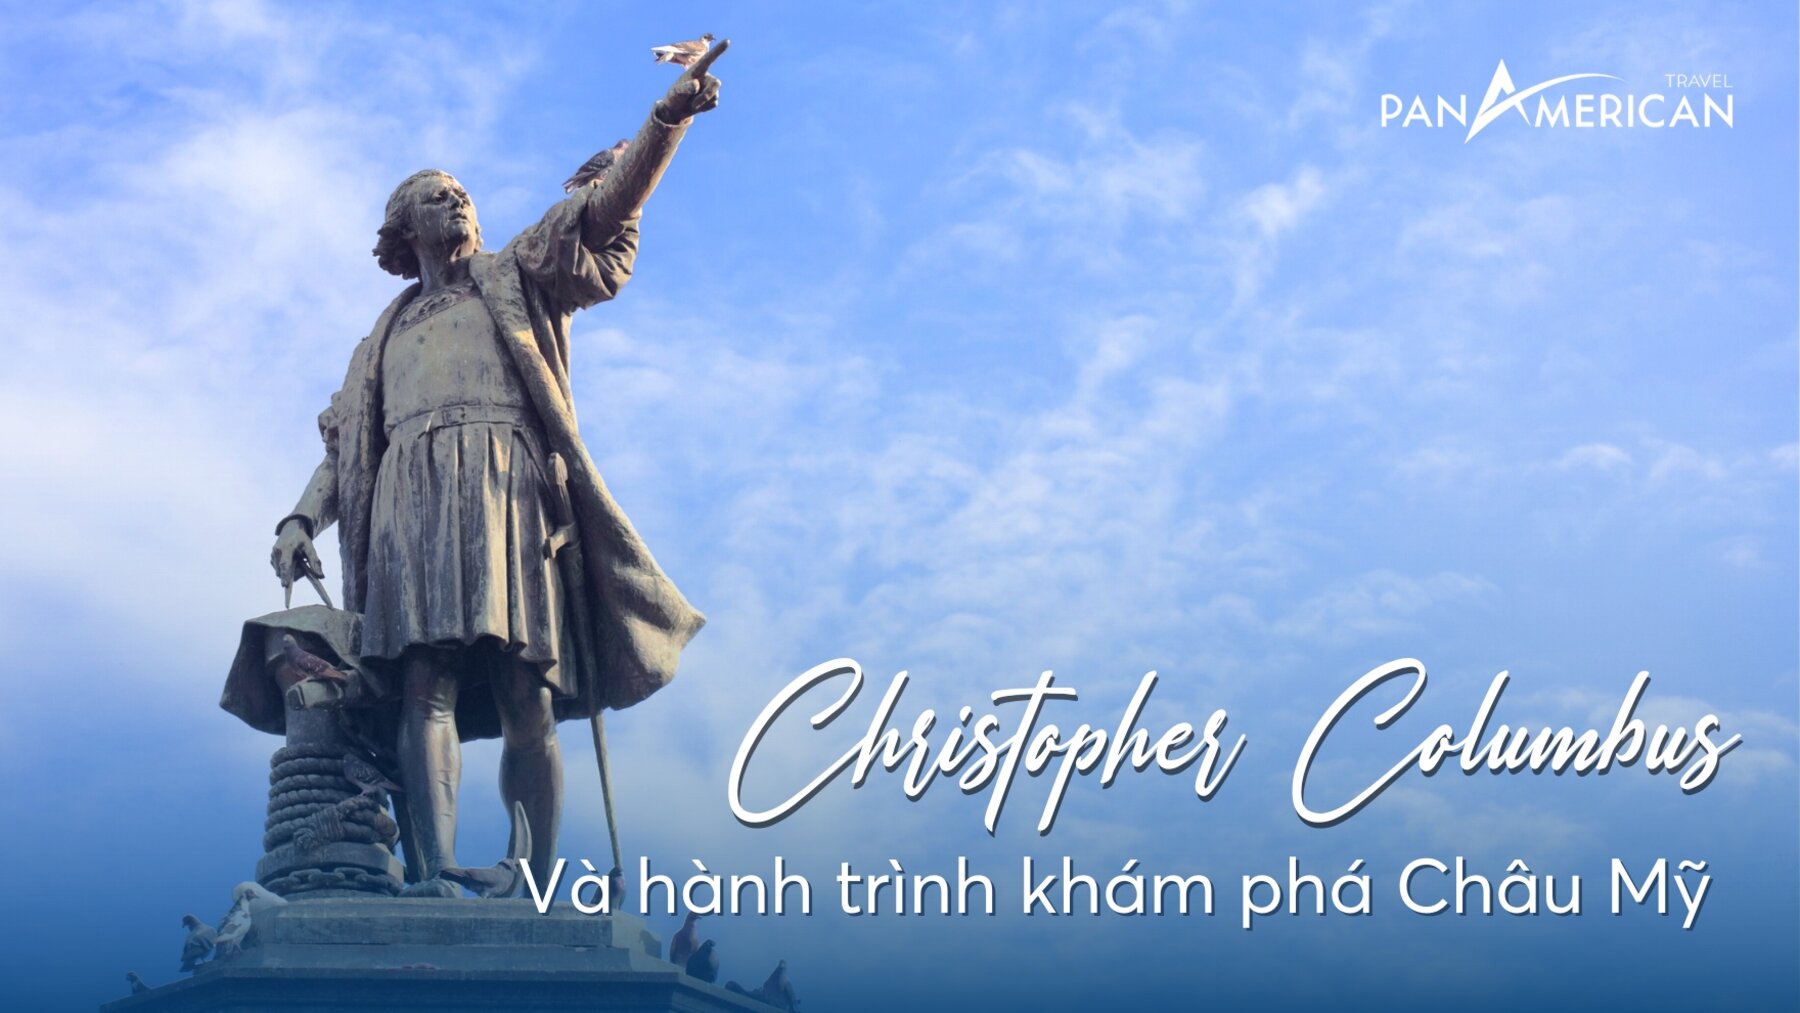 Nhà thám hiểm vĩ đại Christopher Columbus và hành trình khám phá Châu Mỹ